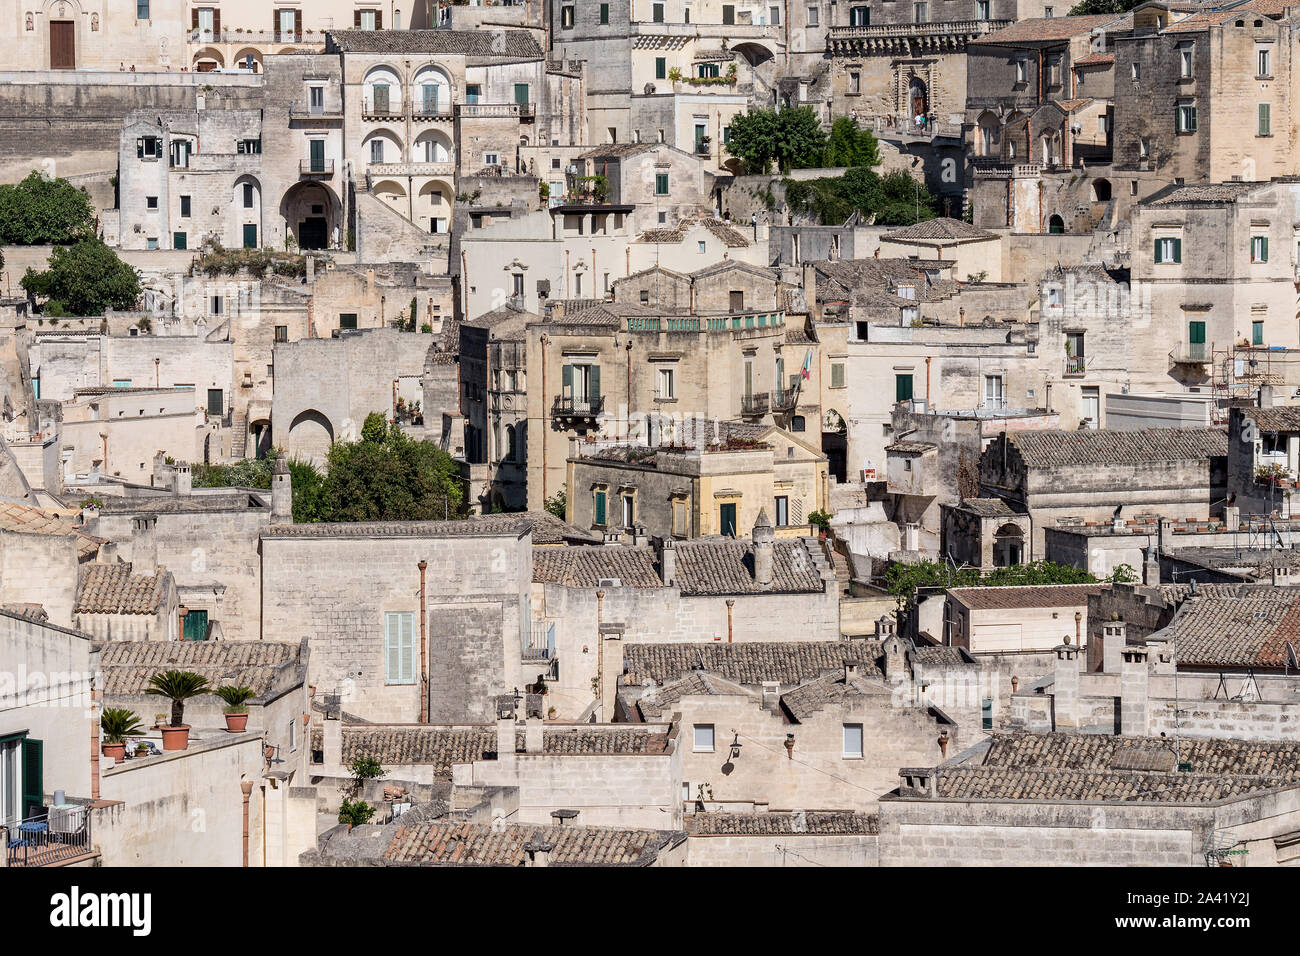 Skyline Luftbild der Altstadt von Matera, die wunderbare Stein Stadt im südlichen Italien, Matera ist eine Europäische Kulturhauptstadt 2019, UNESCO Weltkulturerbe Stockfoto